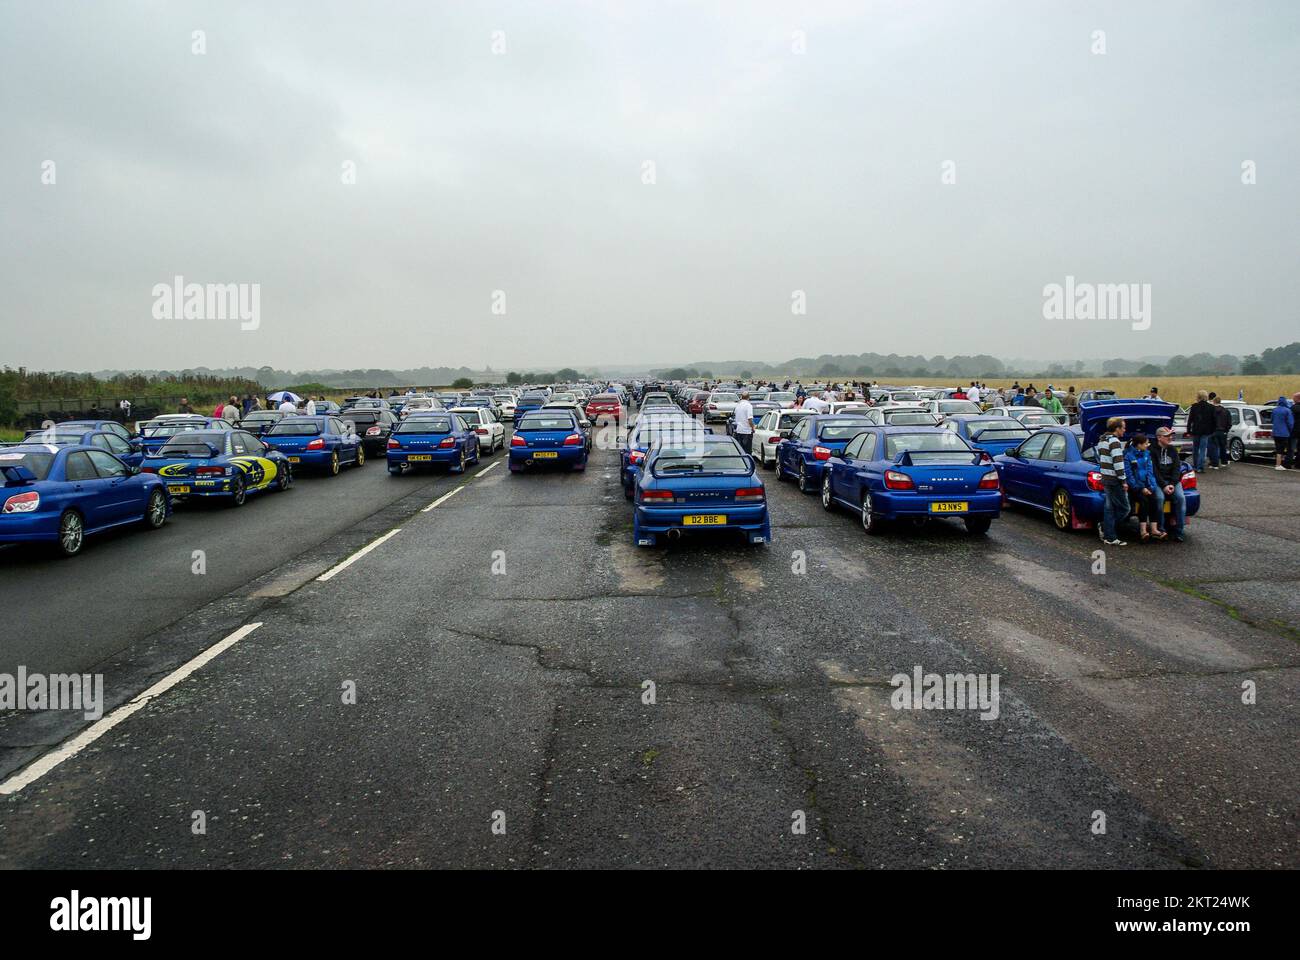 McRae rassemblement de Subaru Imprezas. Anniversaire de la mort Colin McRae près de 1200 voitures ont créé une mosaïque record de voitures sur la piste de l'ancienne RAF Honiley Banque D'Images